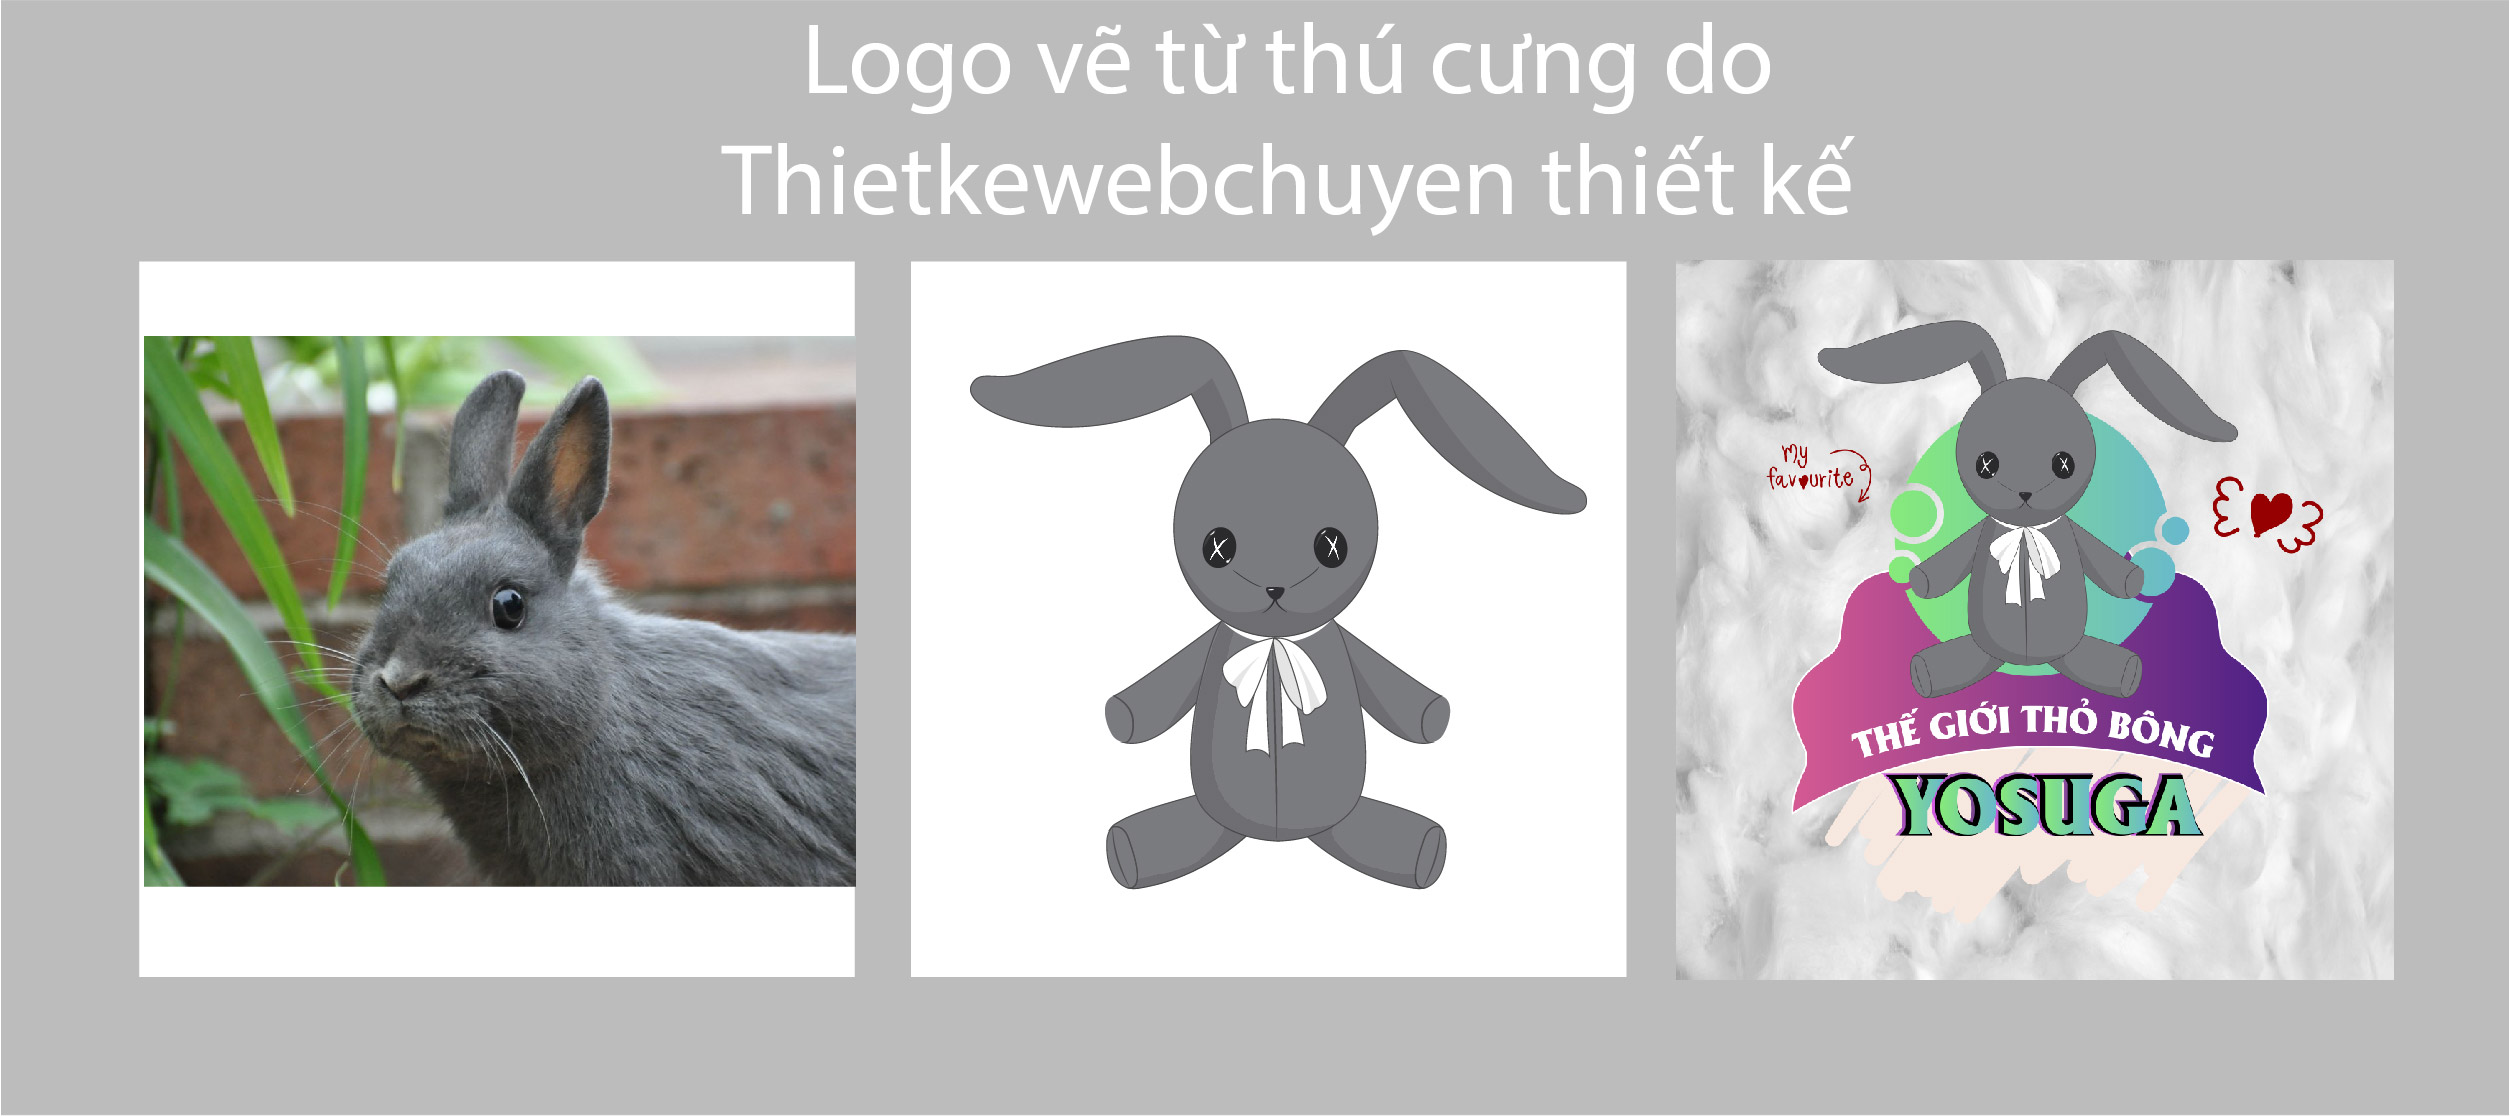 Thiết kế logo giá rẻ chuyên nghiệp vẽ logo đẹp thú cưng tại tphcm của thietkewebchuyen